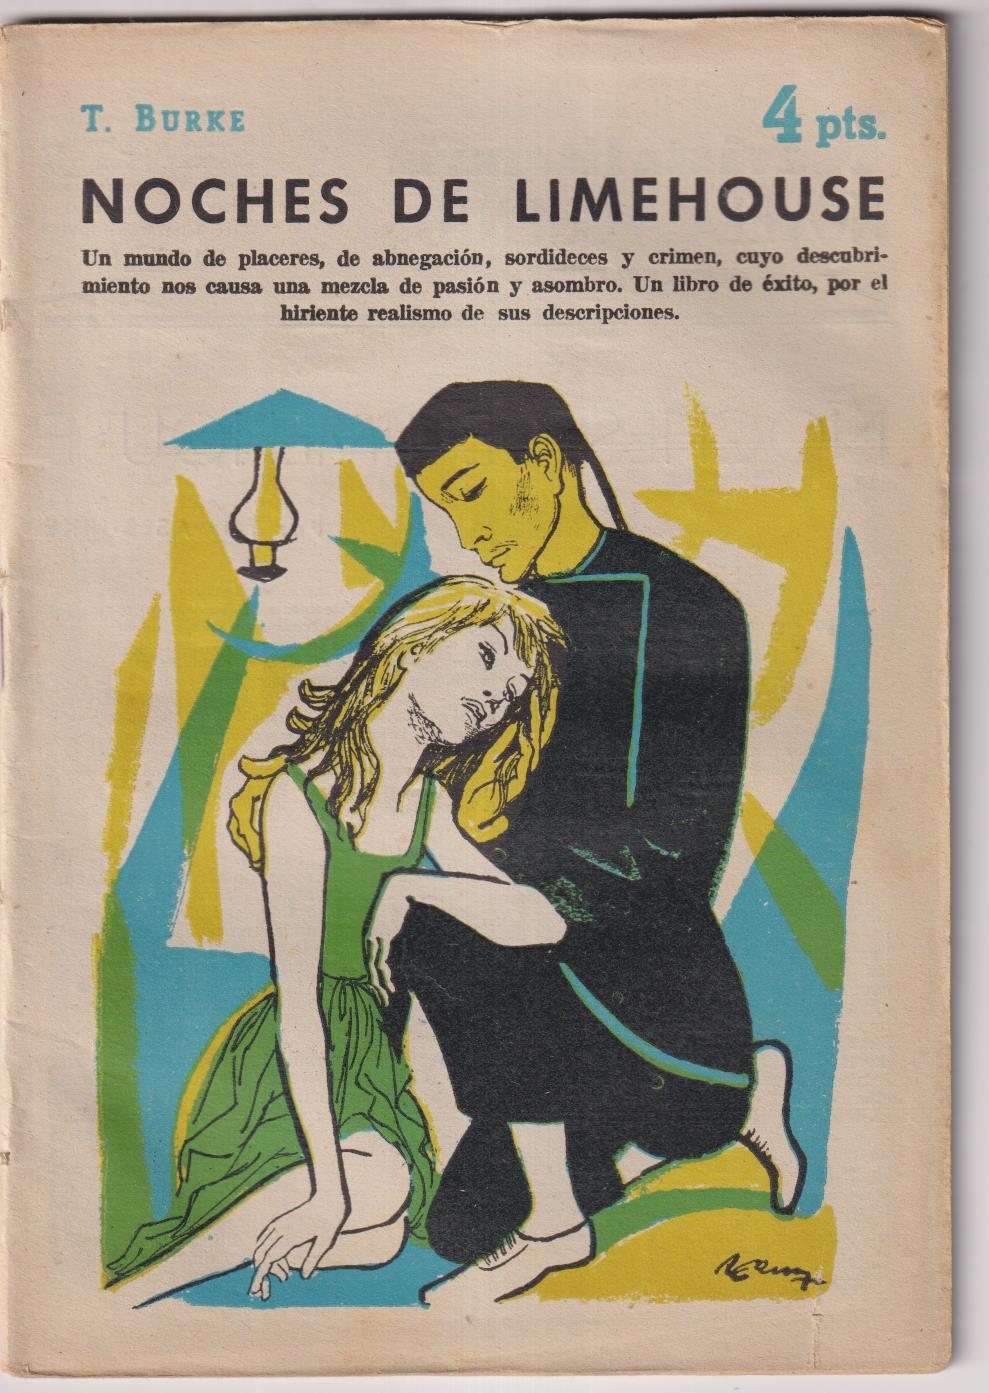 Revista Literaia Novelas y cuentos nº 1438. T. Burke. Noches de Limehouse. Año 1958